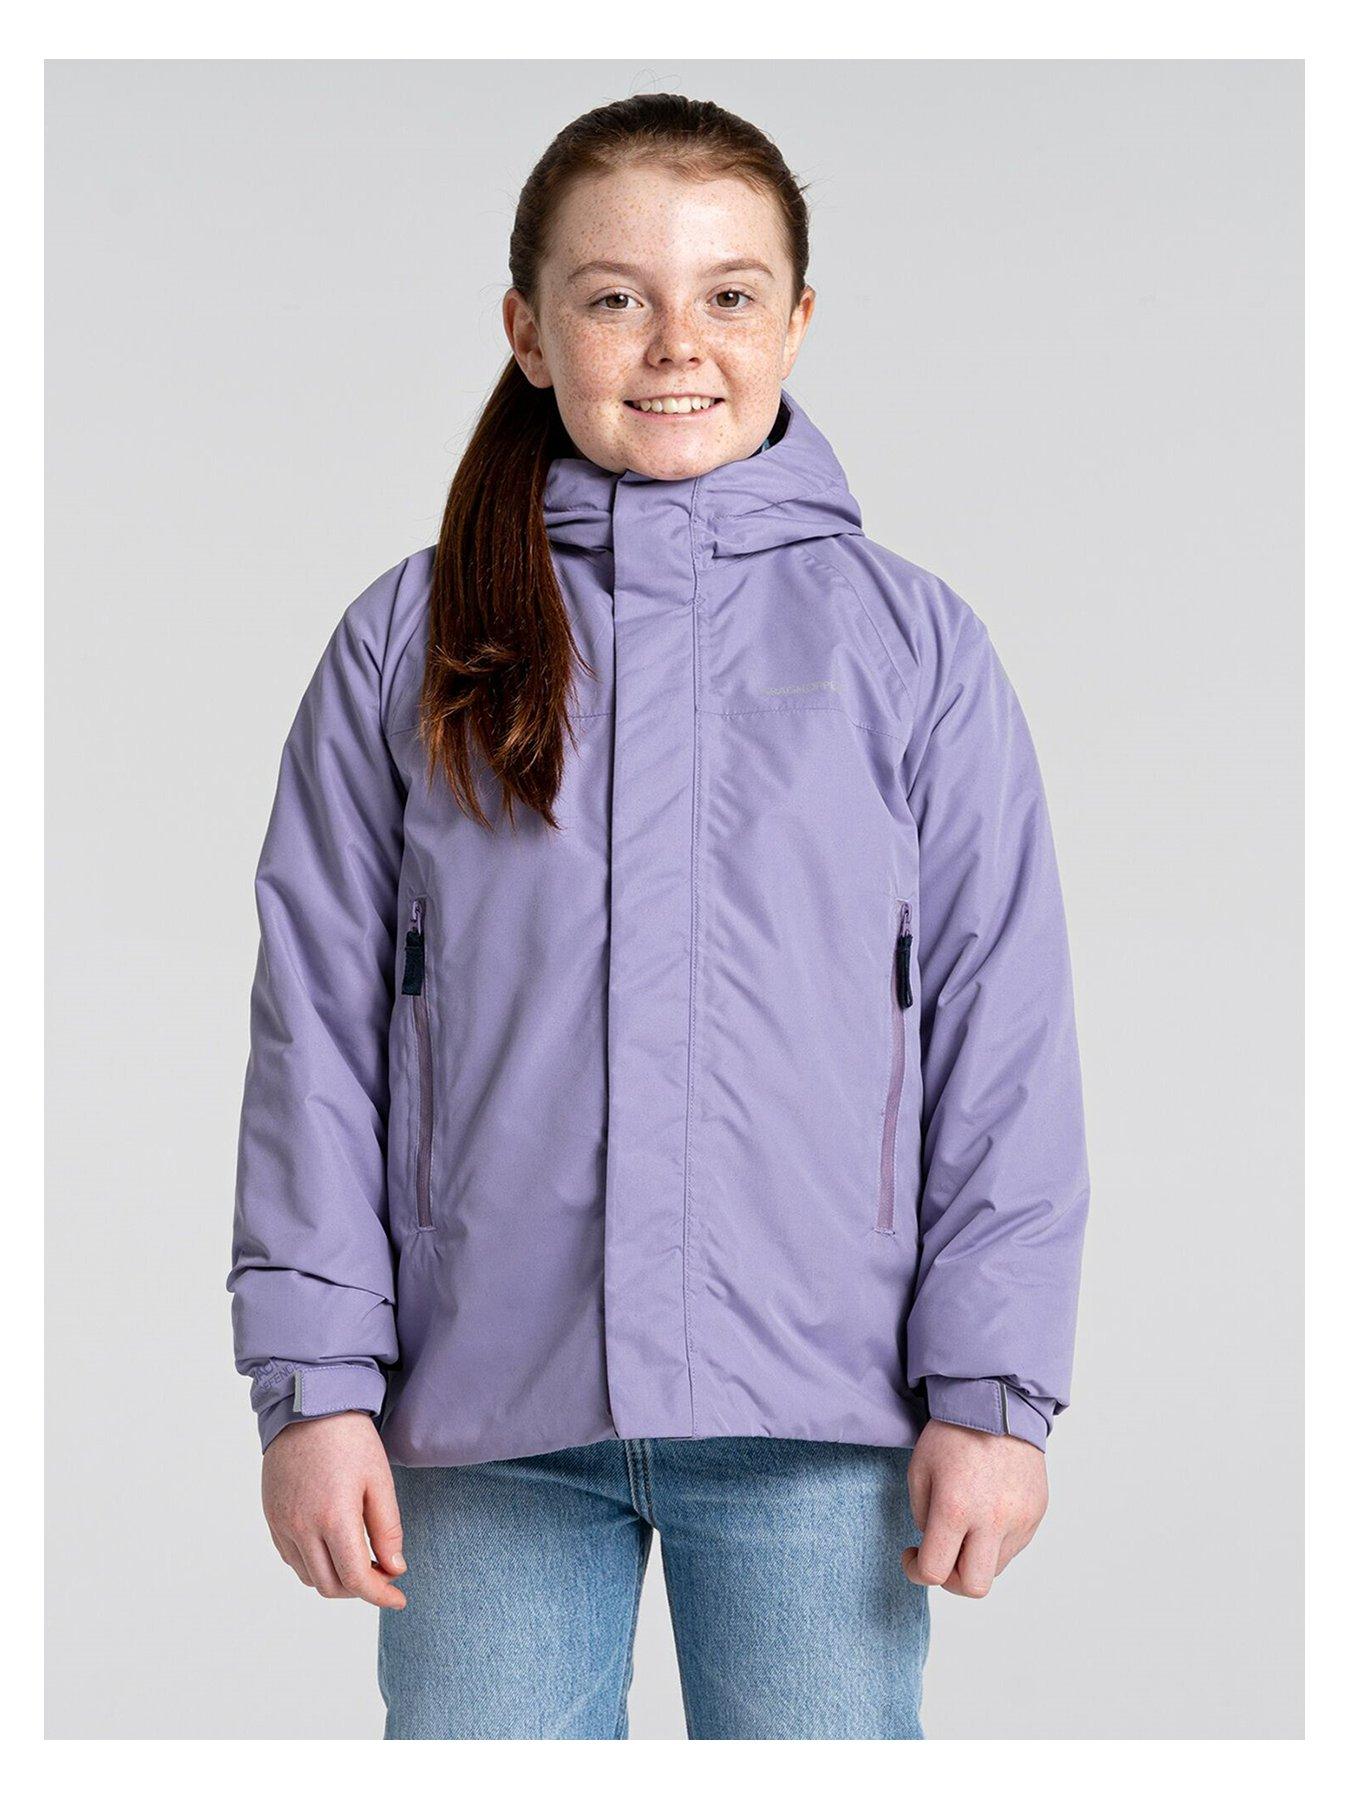 Craghoppers Kids Harue Jacket - Purple/navy | very.co.uk